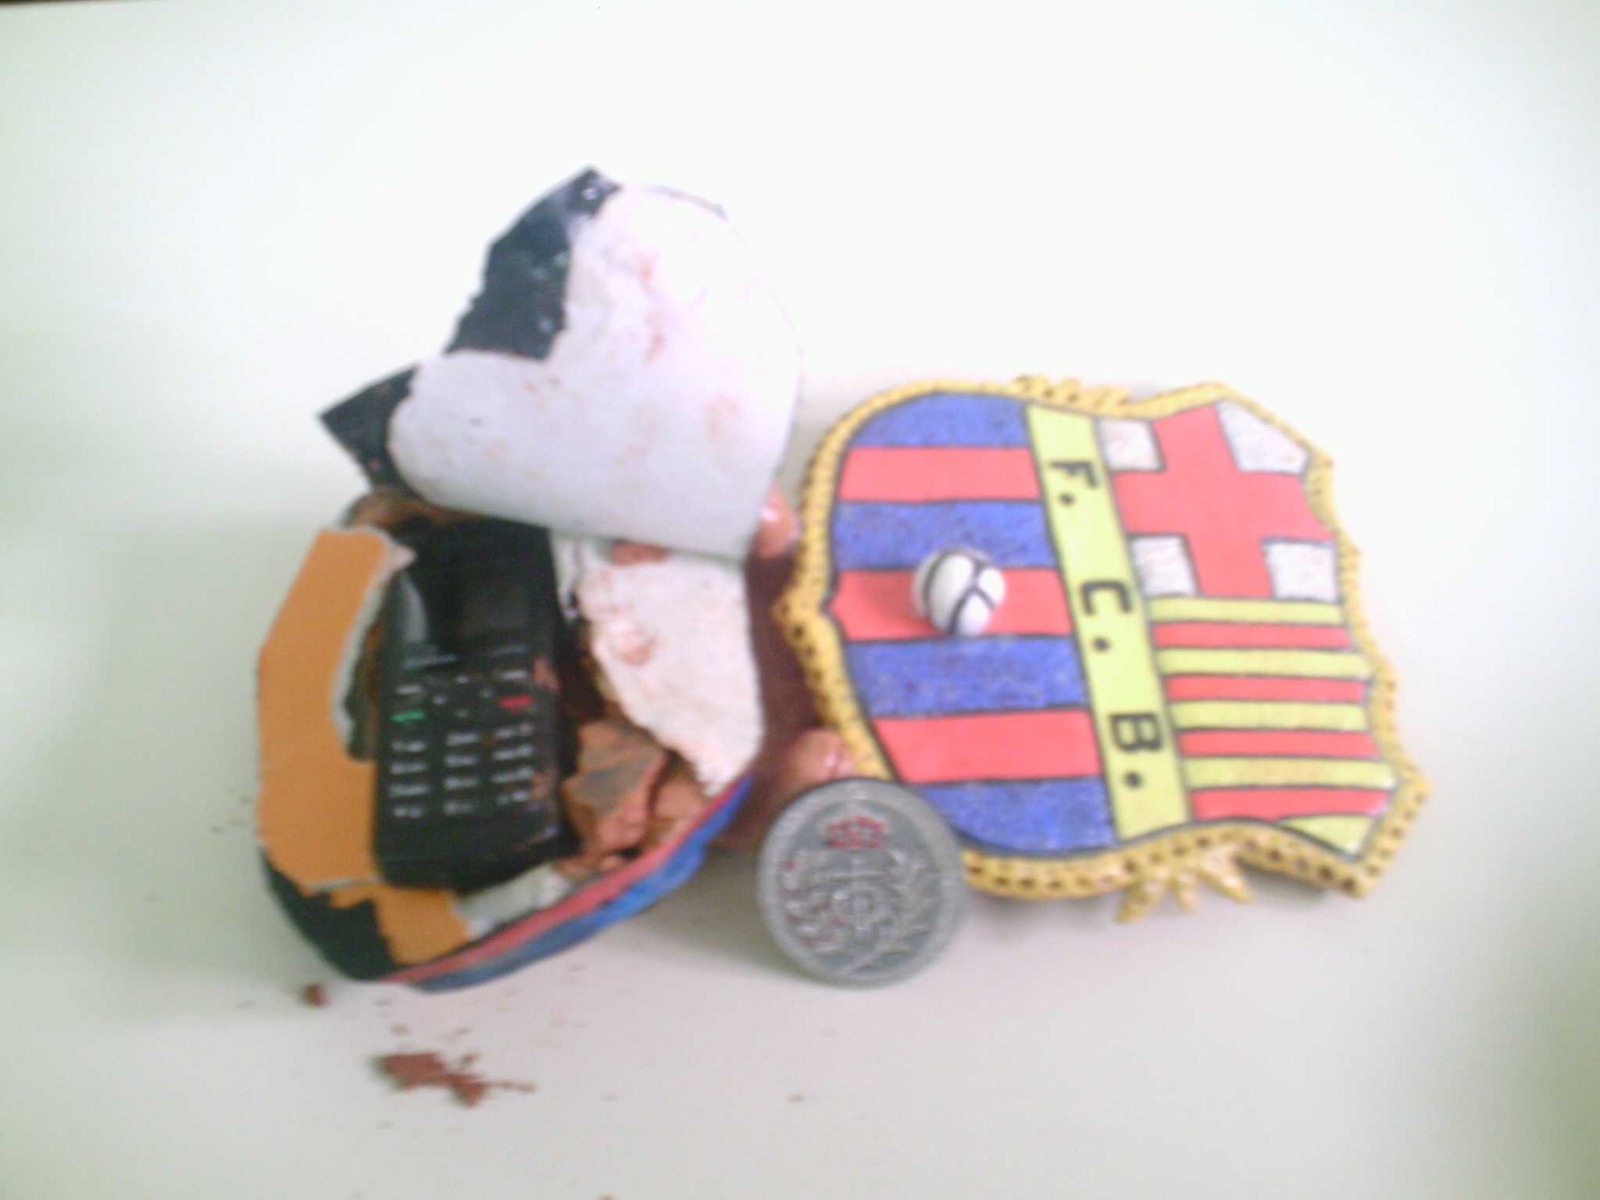 Galletas, lejía, un escudo del Barça… así cuelan los móviles ilegalmente en las cárceles